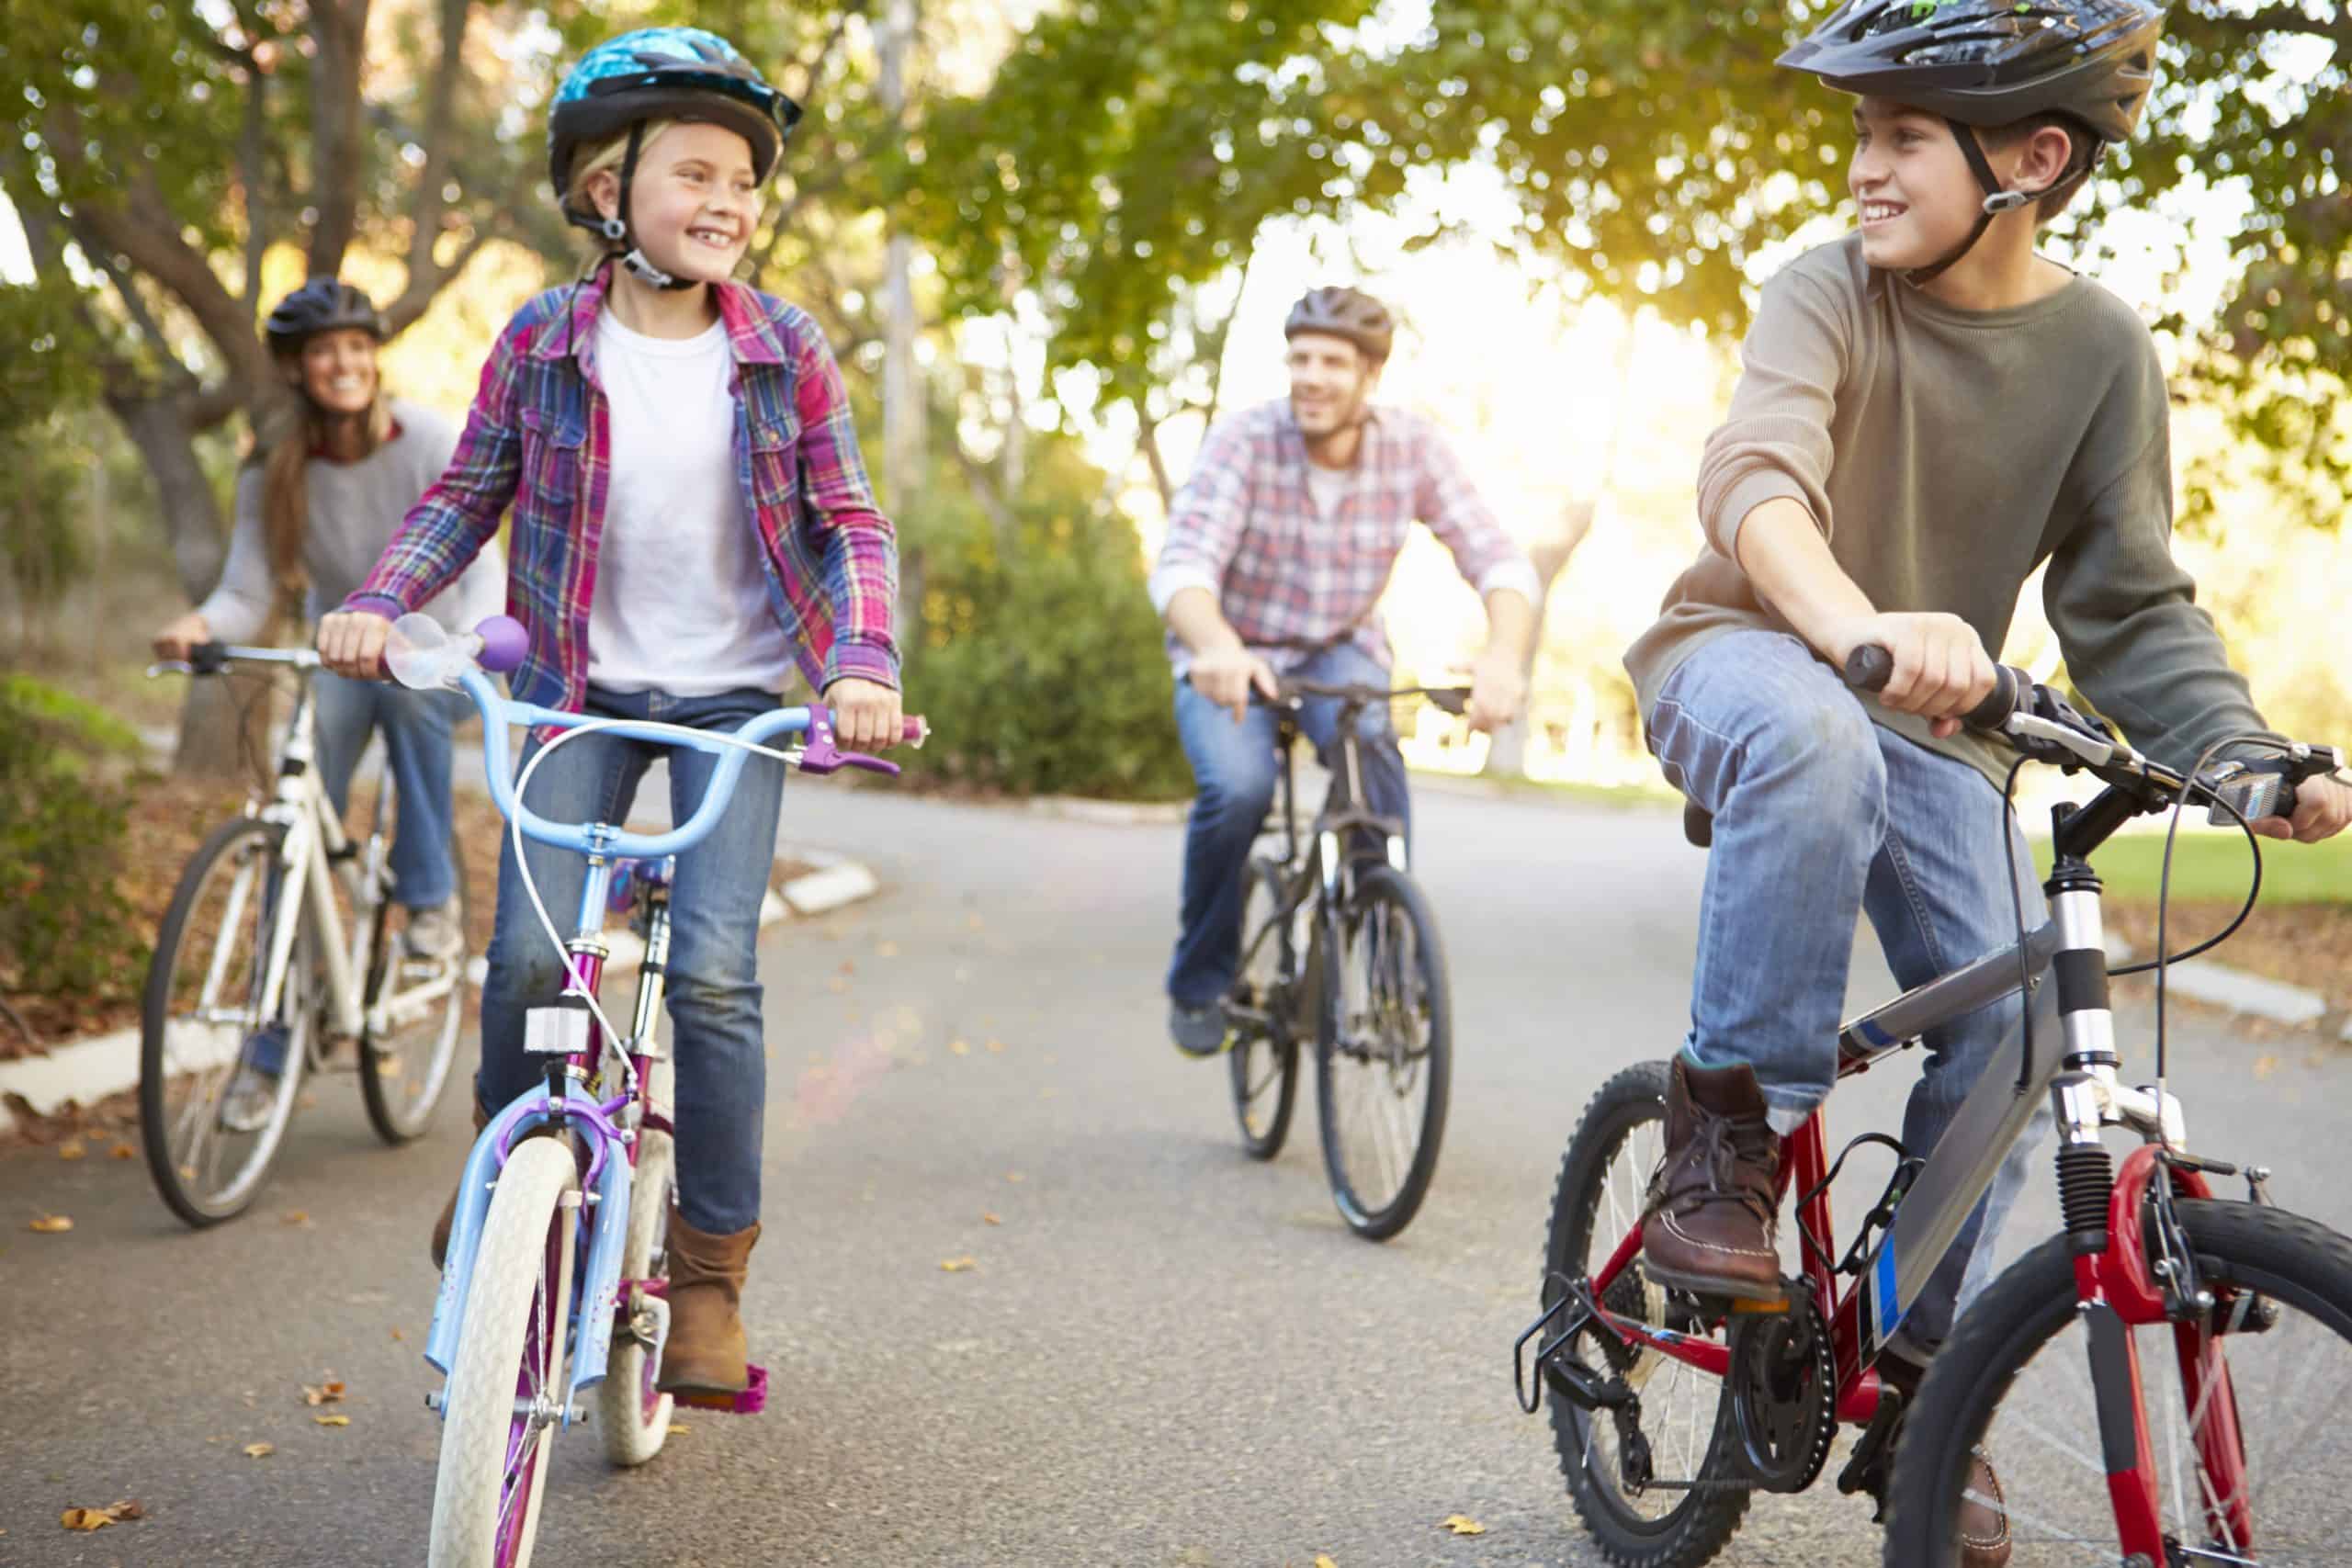 Ride their bikes. Дети с велосипедом. Кататься на велосипеде. Подросток на велосипеде. Дети катаются на велосипеде.